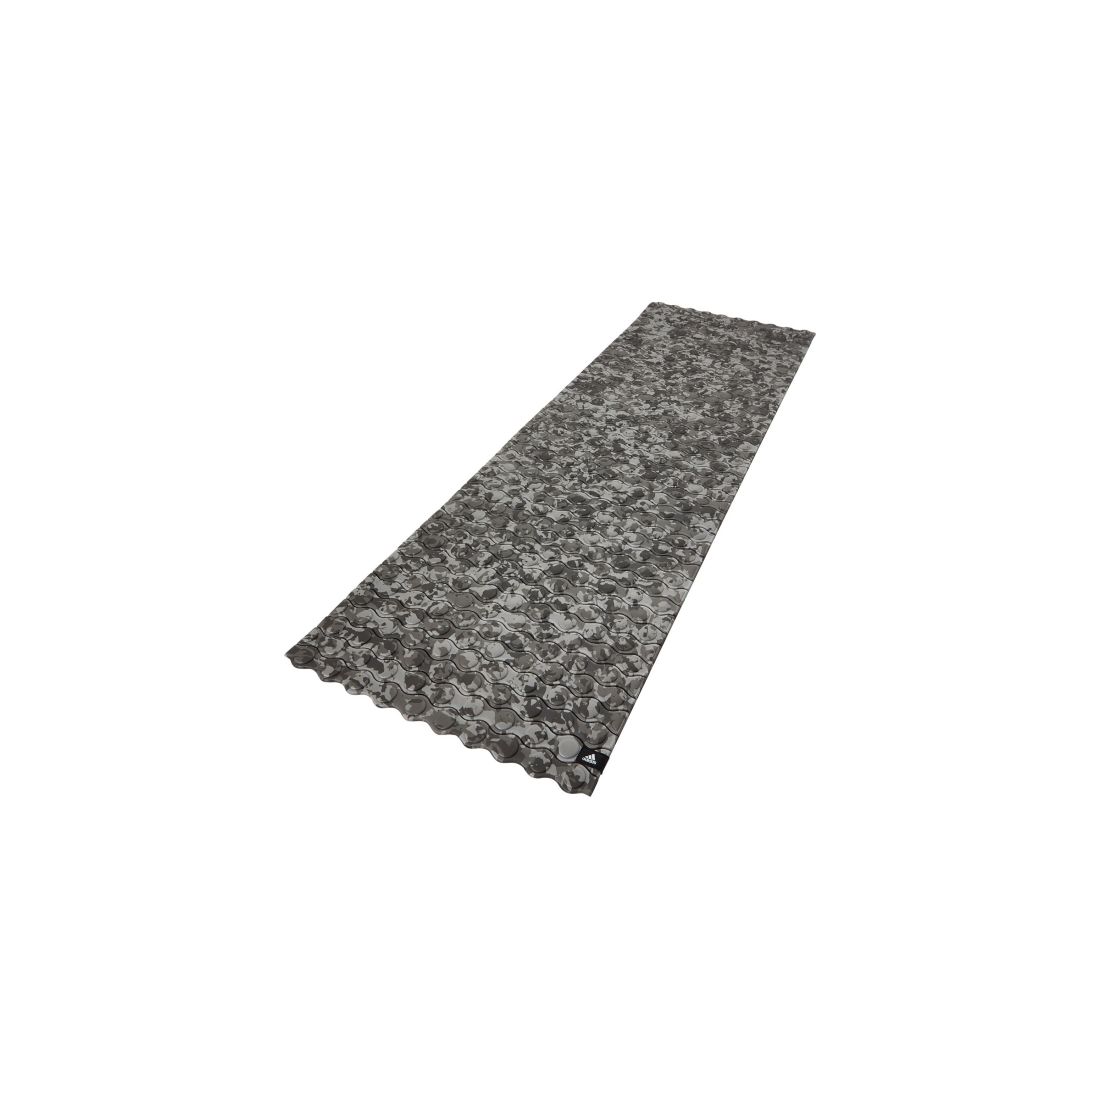 Treniruočių kilimėlis Adidas, 9 mm